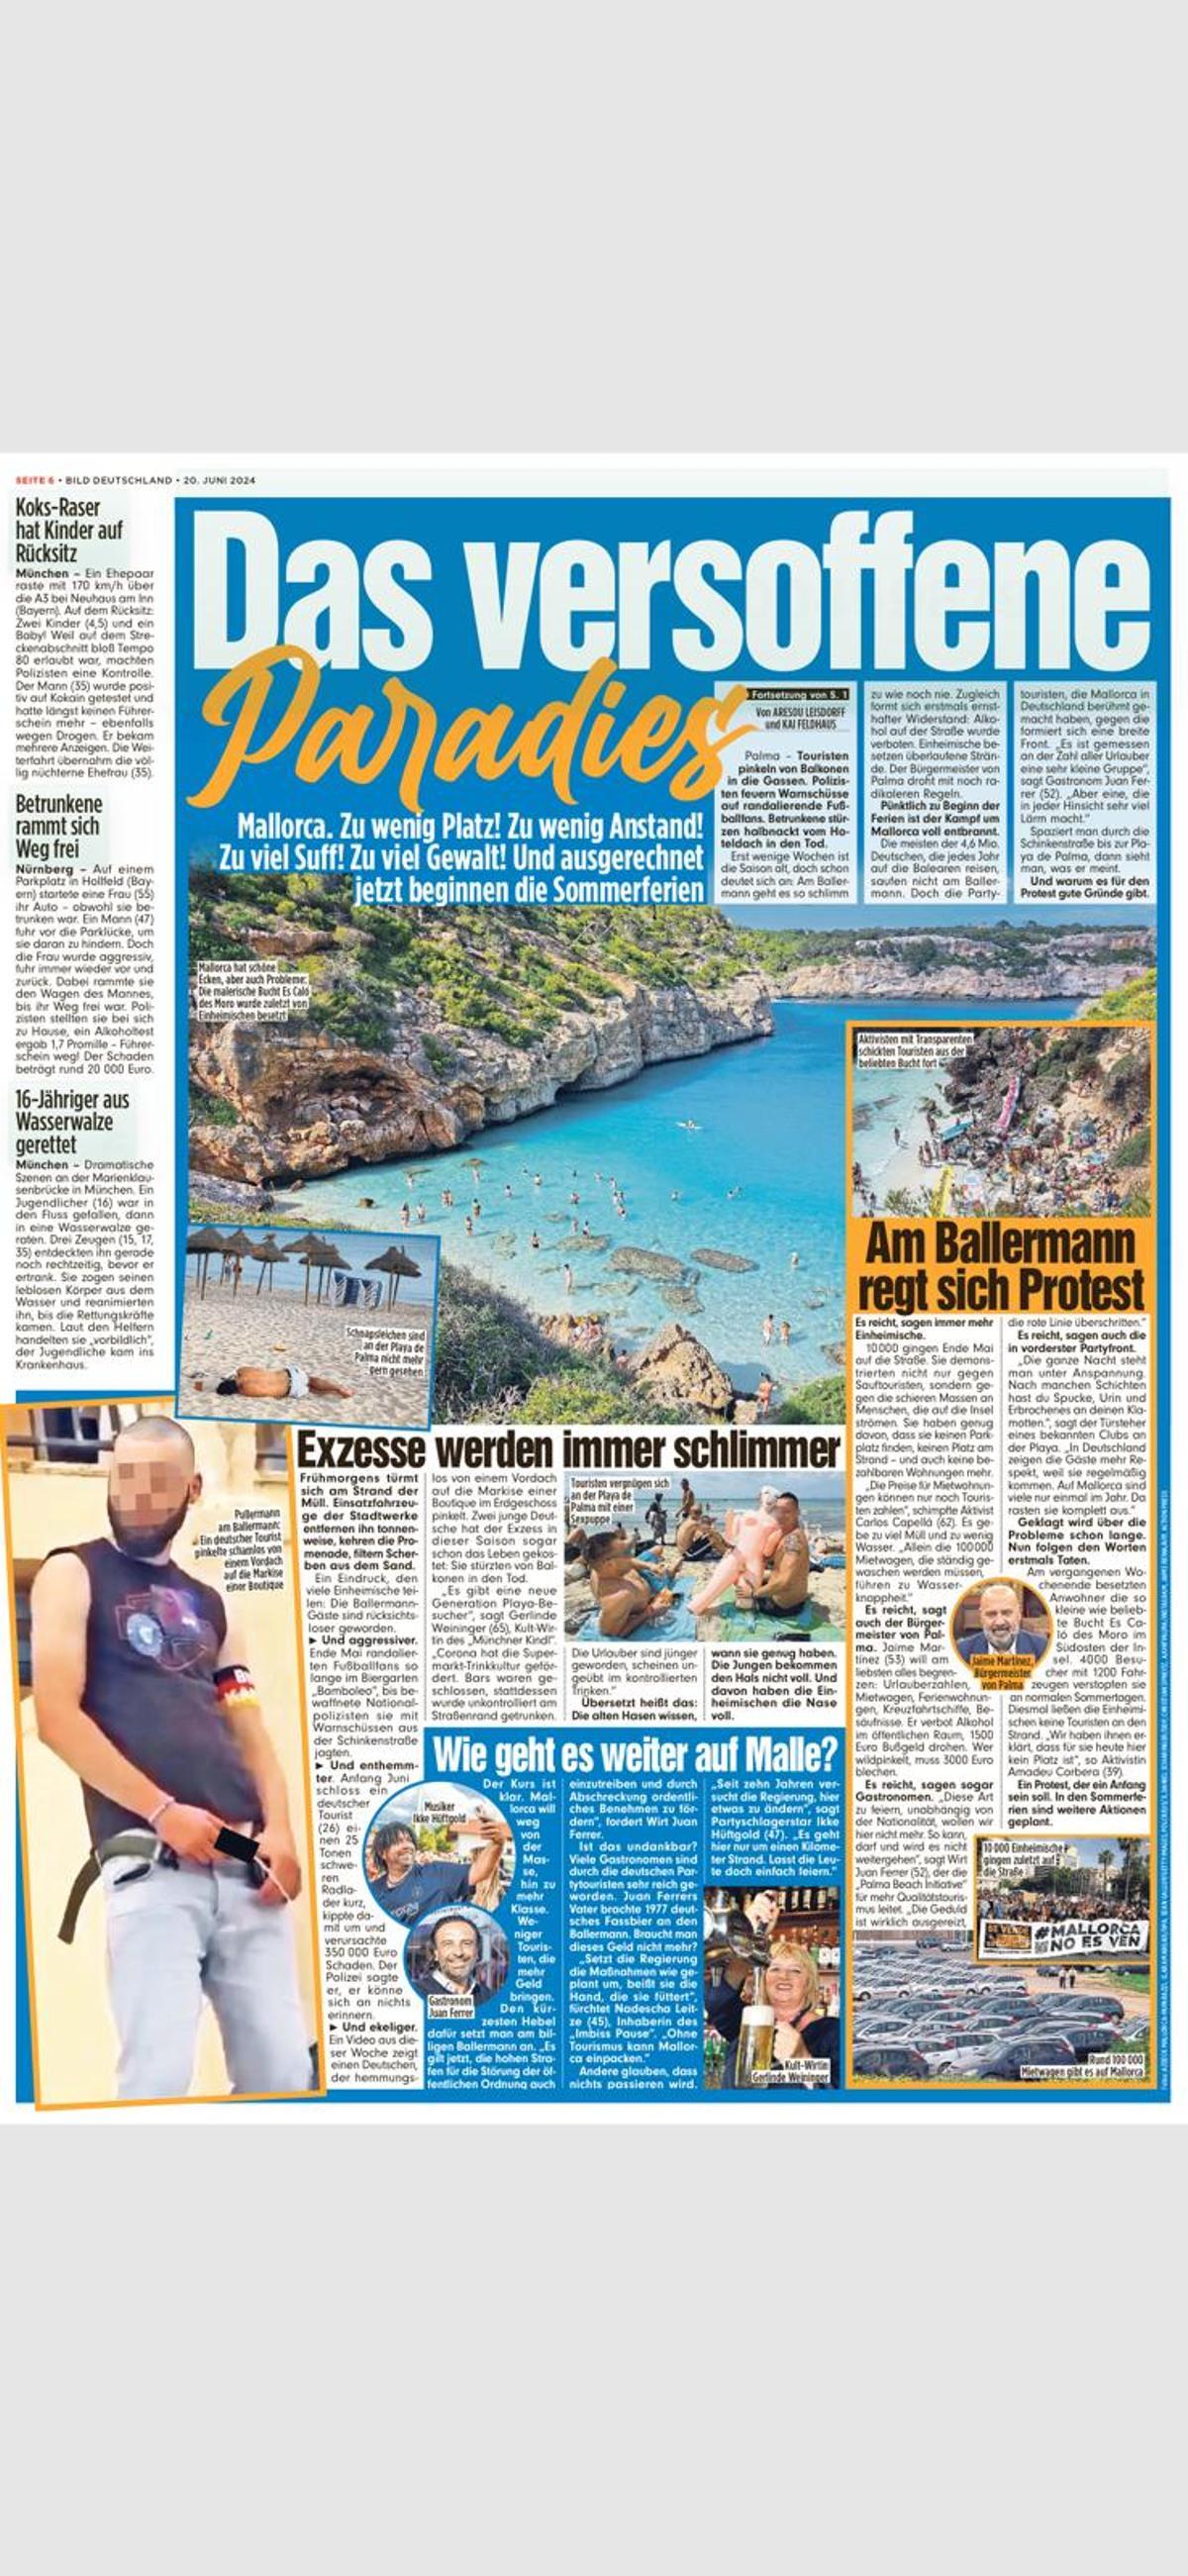 El reportaje publicado este jueves en el 'Bild' sobre cómo empeora el turismo de borrachero en Playa de Palma.